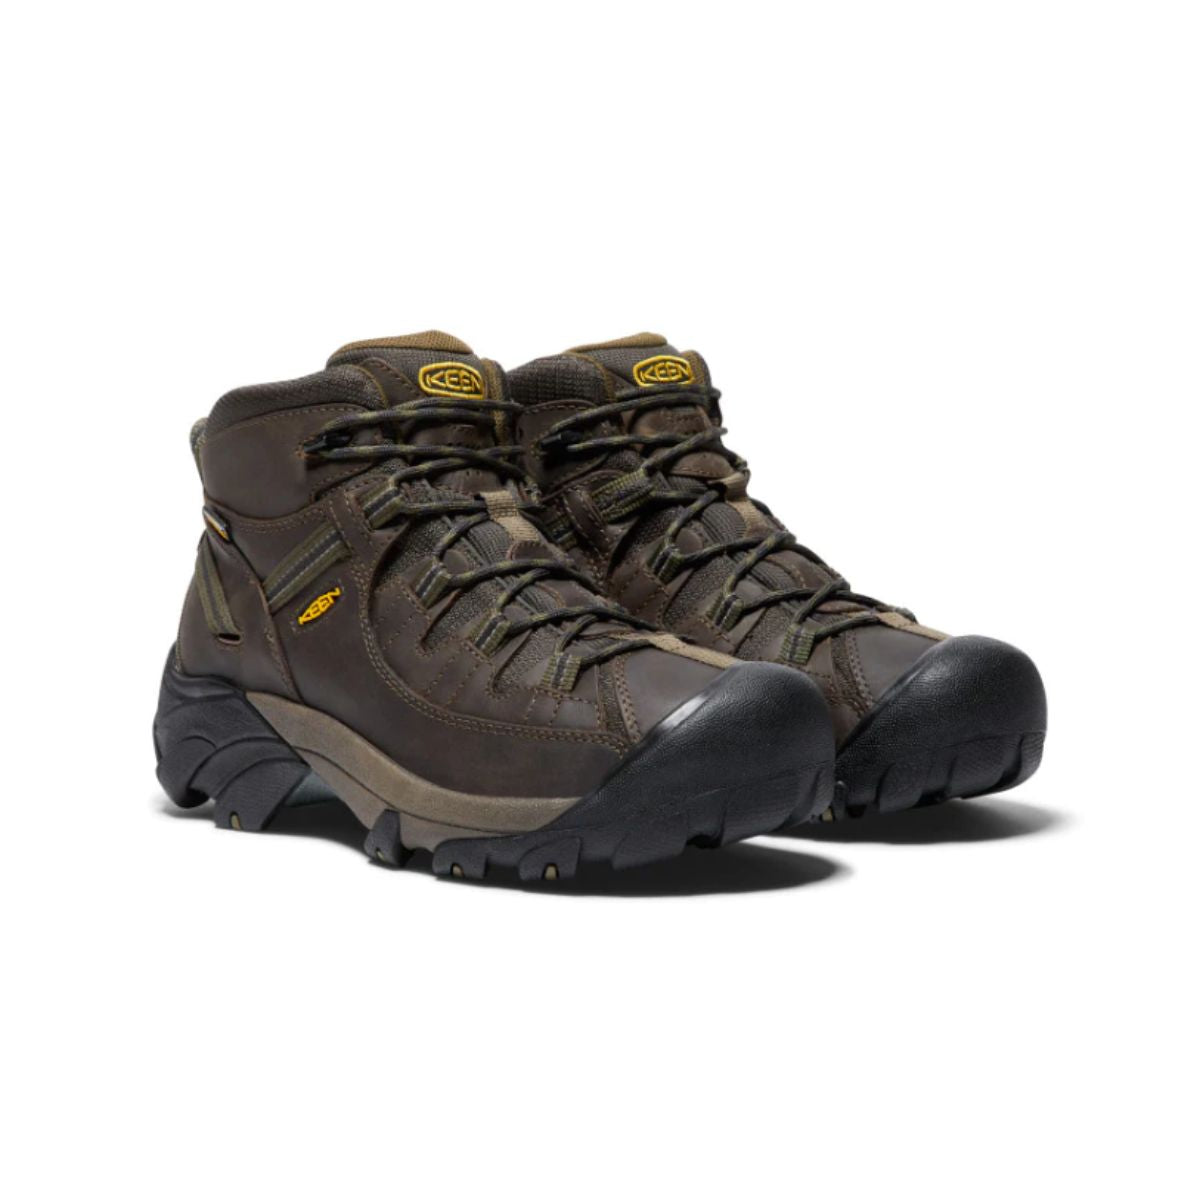 KEEN, Targhee II Mid Waterproof Hiking Boots, Men's, Canteen/Dark Olive